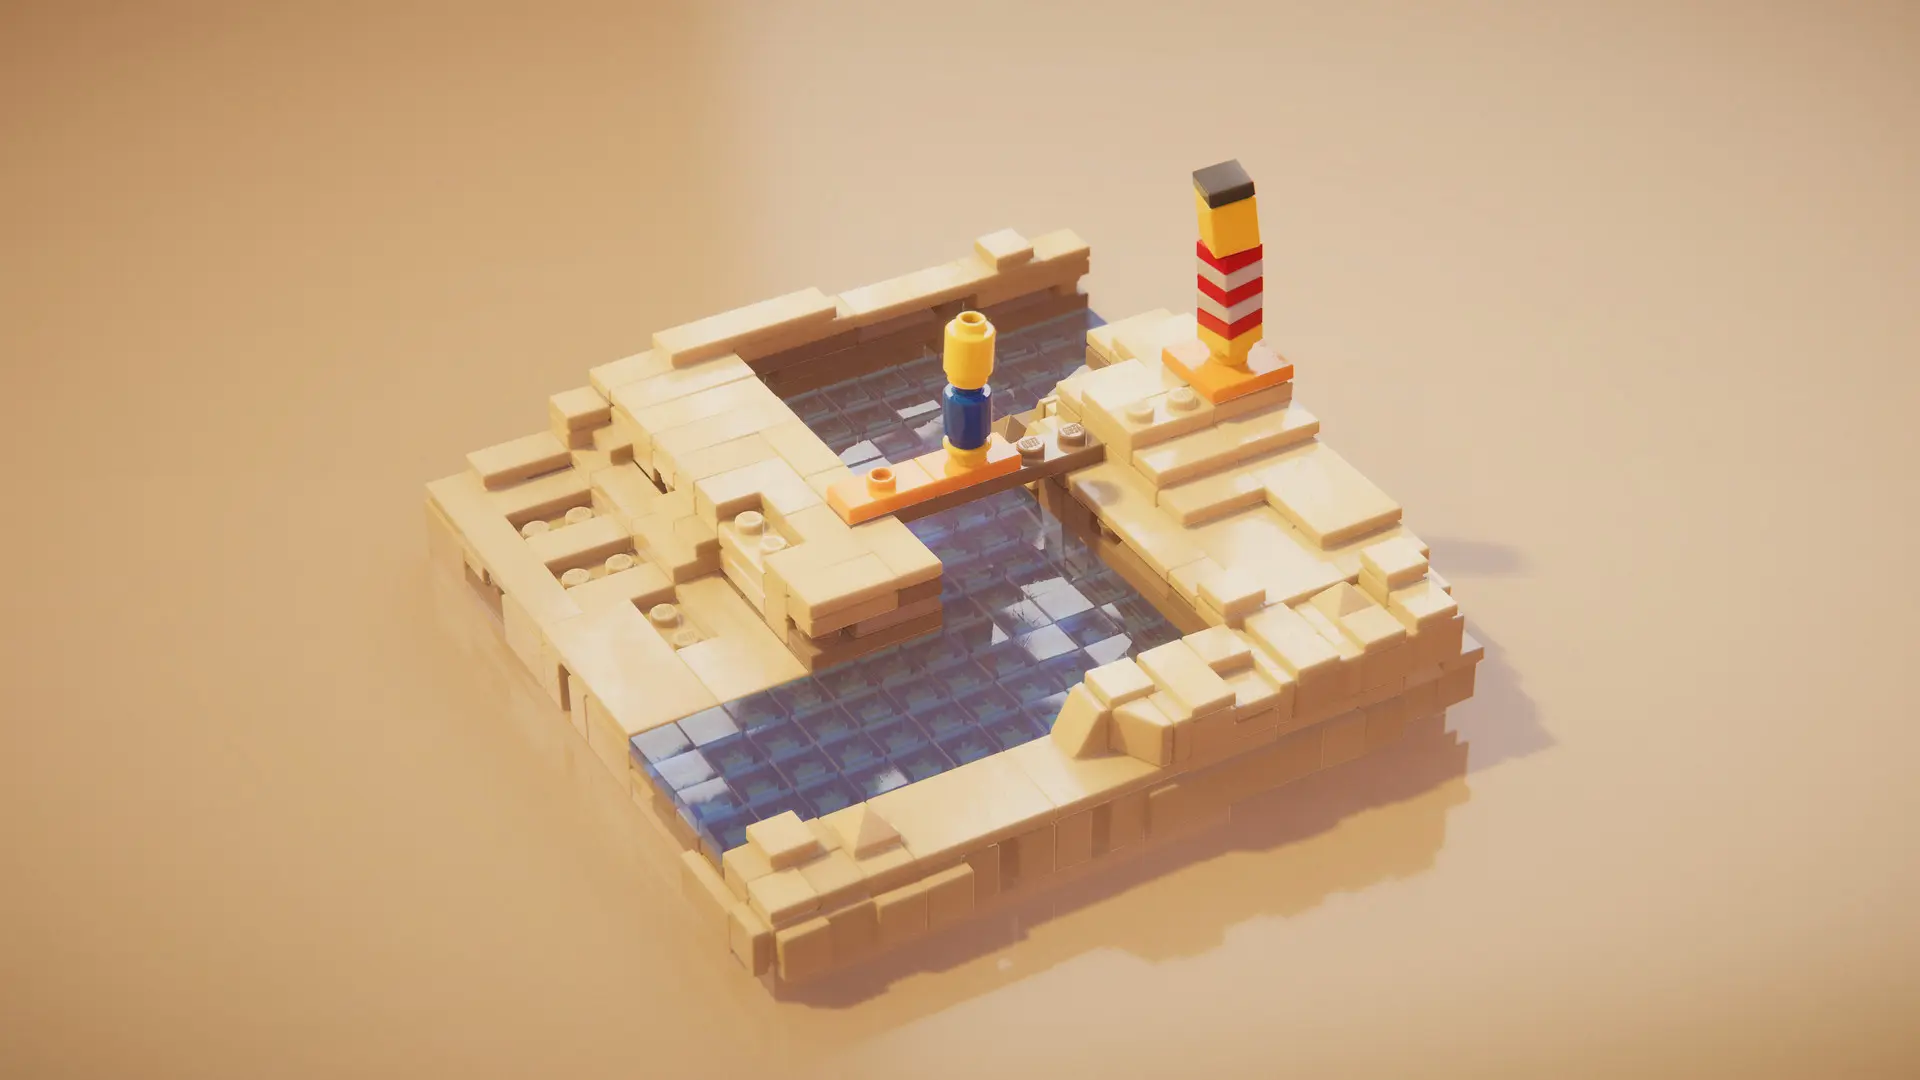 دانلود بازی LEGO Builder's Journey برای کامپیوتر PC